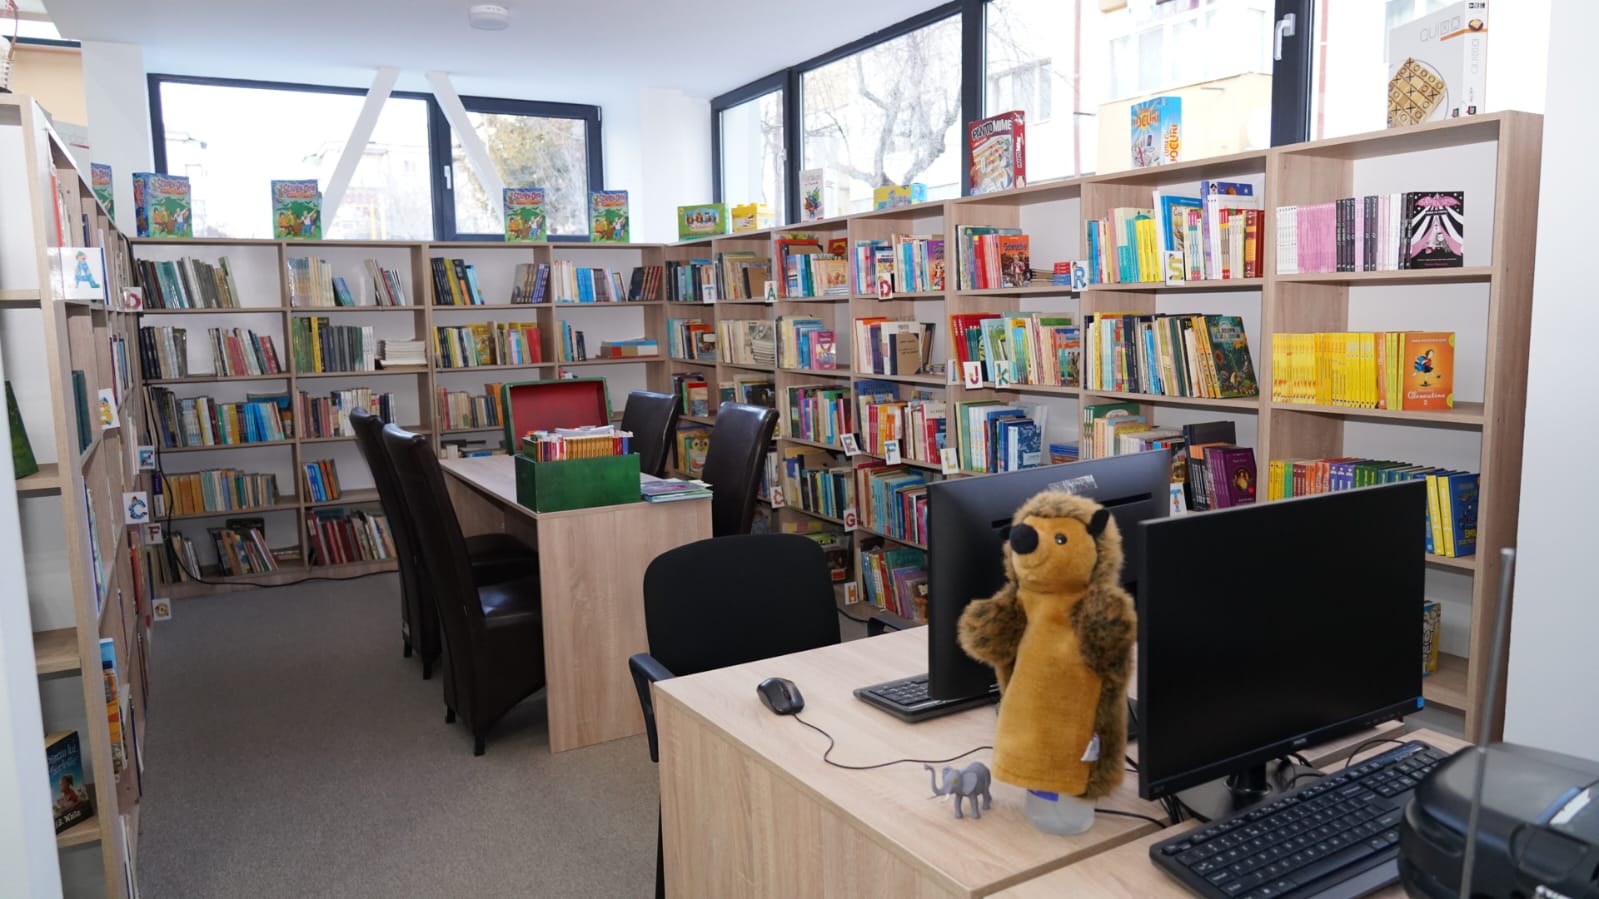 https://www.cjd.ro/storage/comunicate-de-presa/16-02-2022/5023/a-fost-inaugurat-sediul-filialei-pentru-copii-a-bibliotecii-judetene-10.JPG